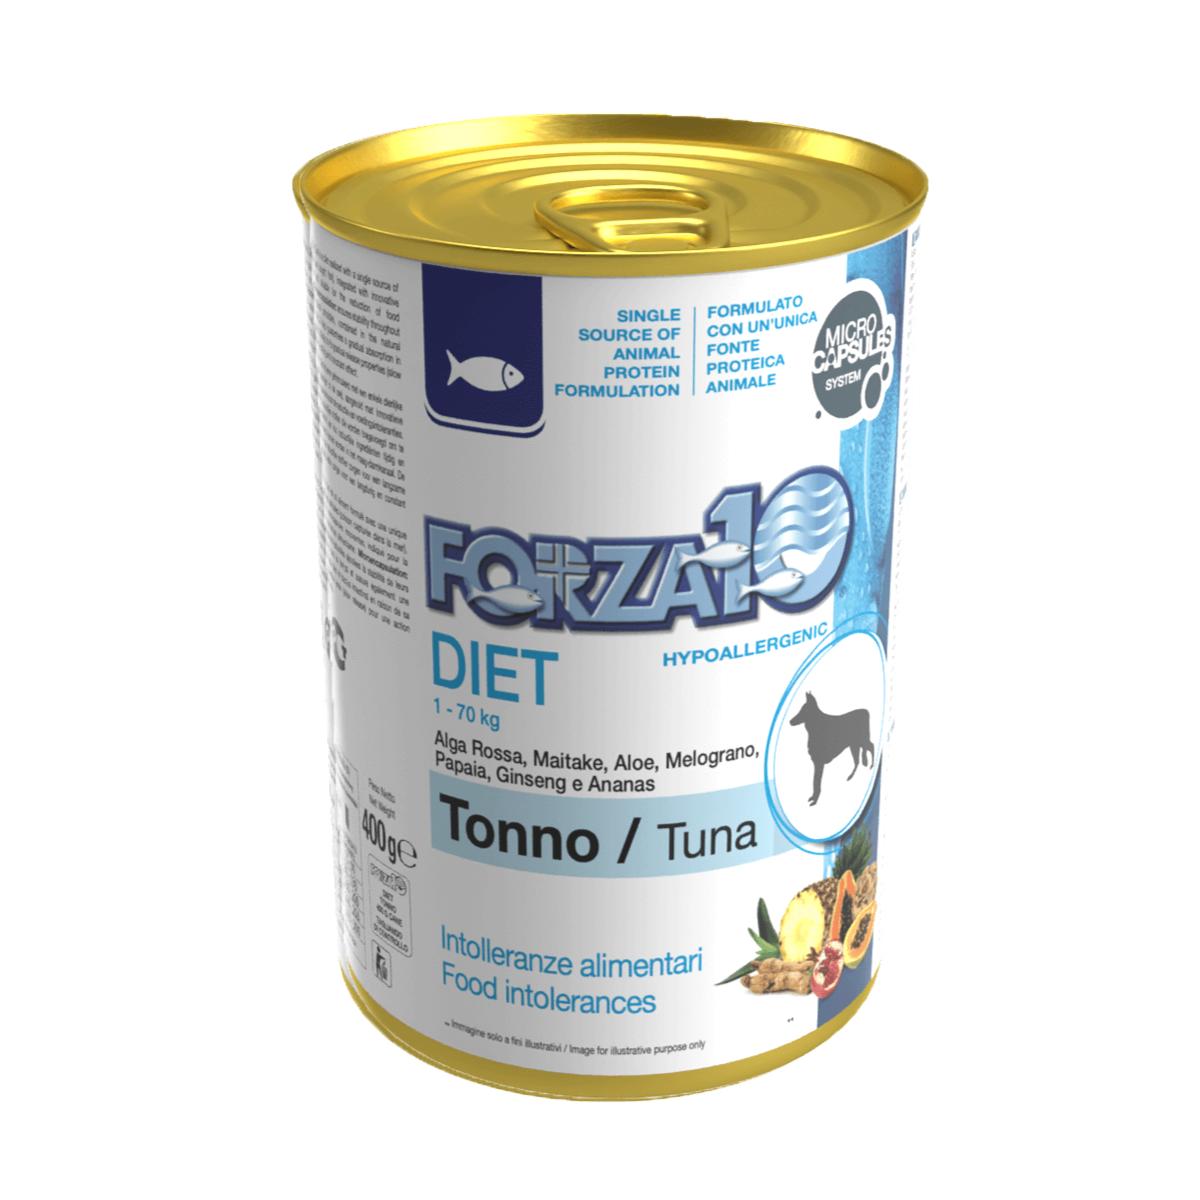 Forza10 DIET - diētisks konservs suņiem ar tunci un kartupeļiem  hipoalerģisks uzturs alerģiskiem dzīvniekiem vai dzīvniekiem ar uzturvielu nepanesību. 